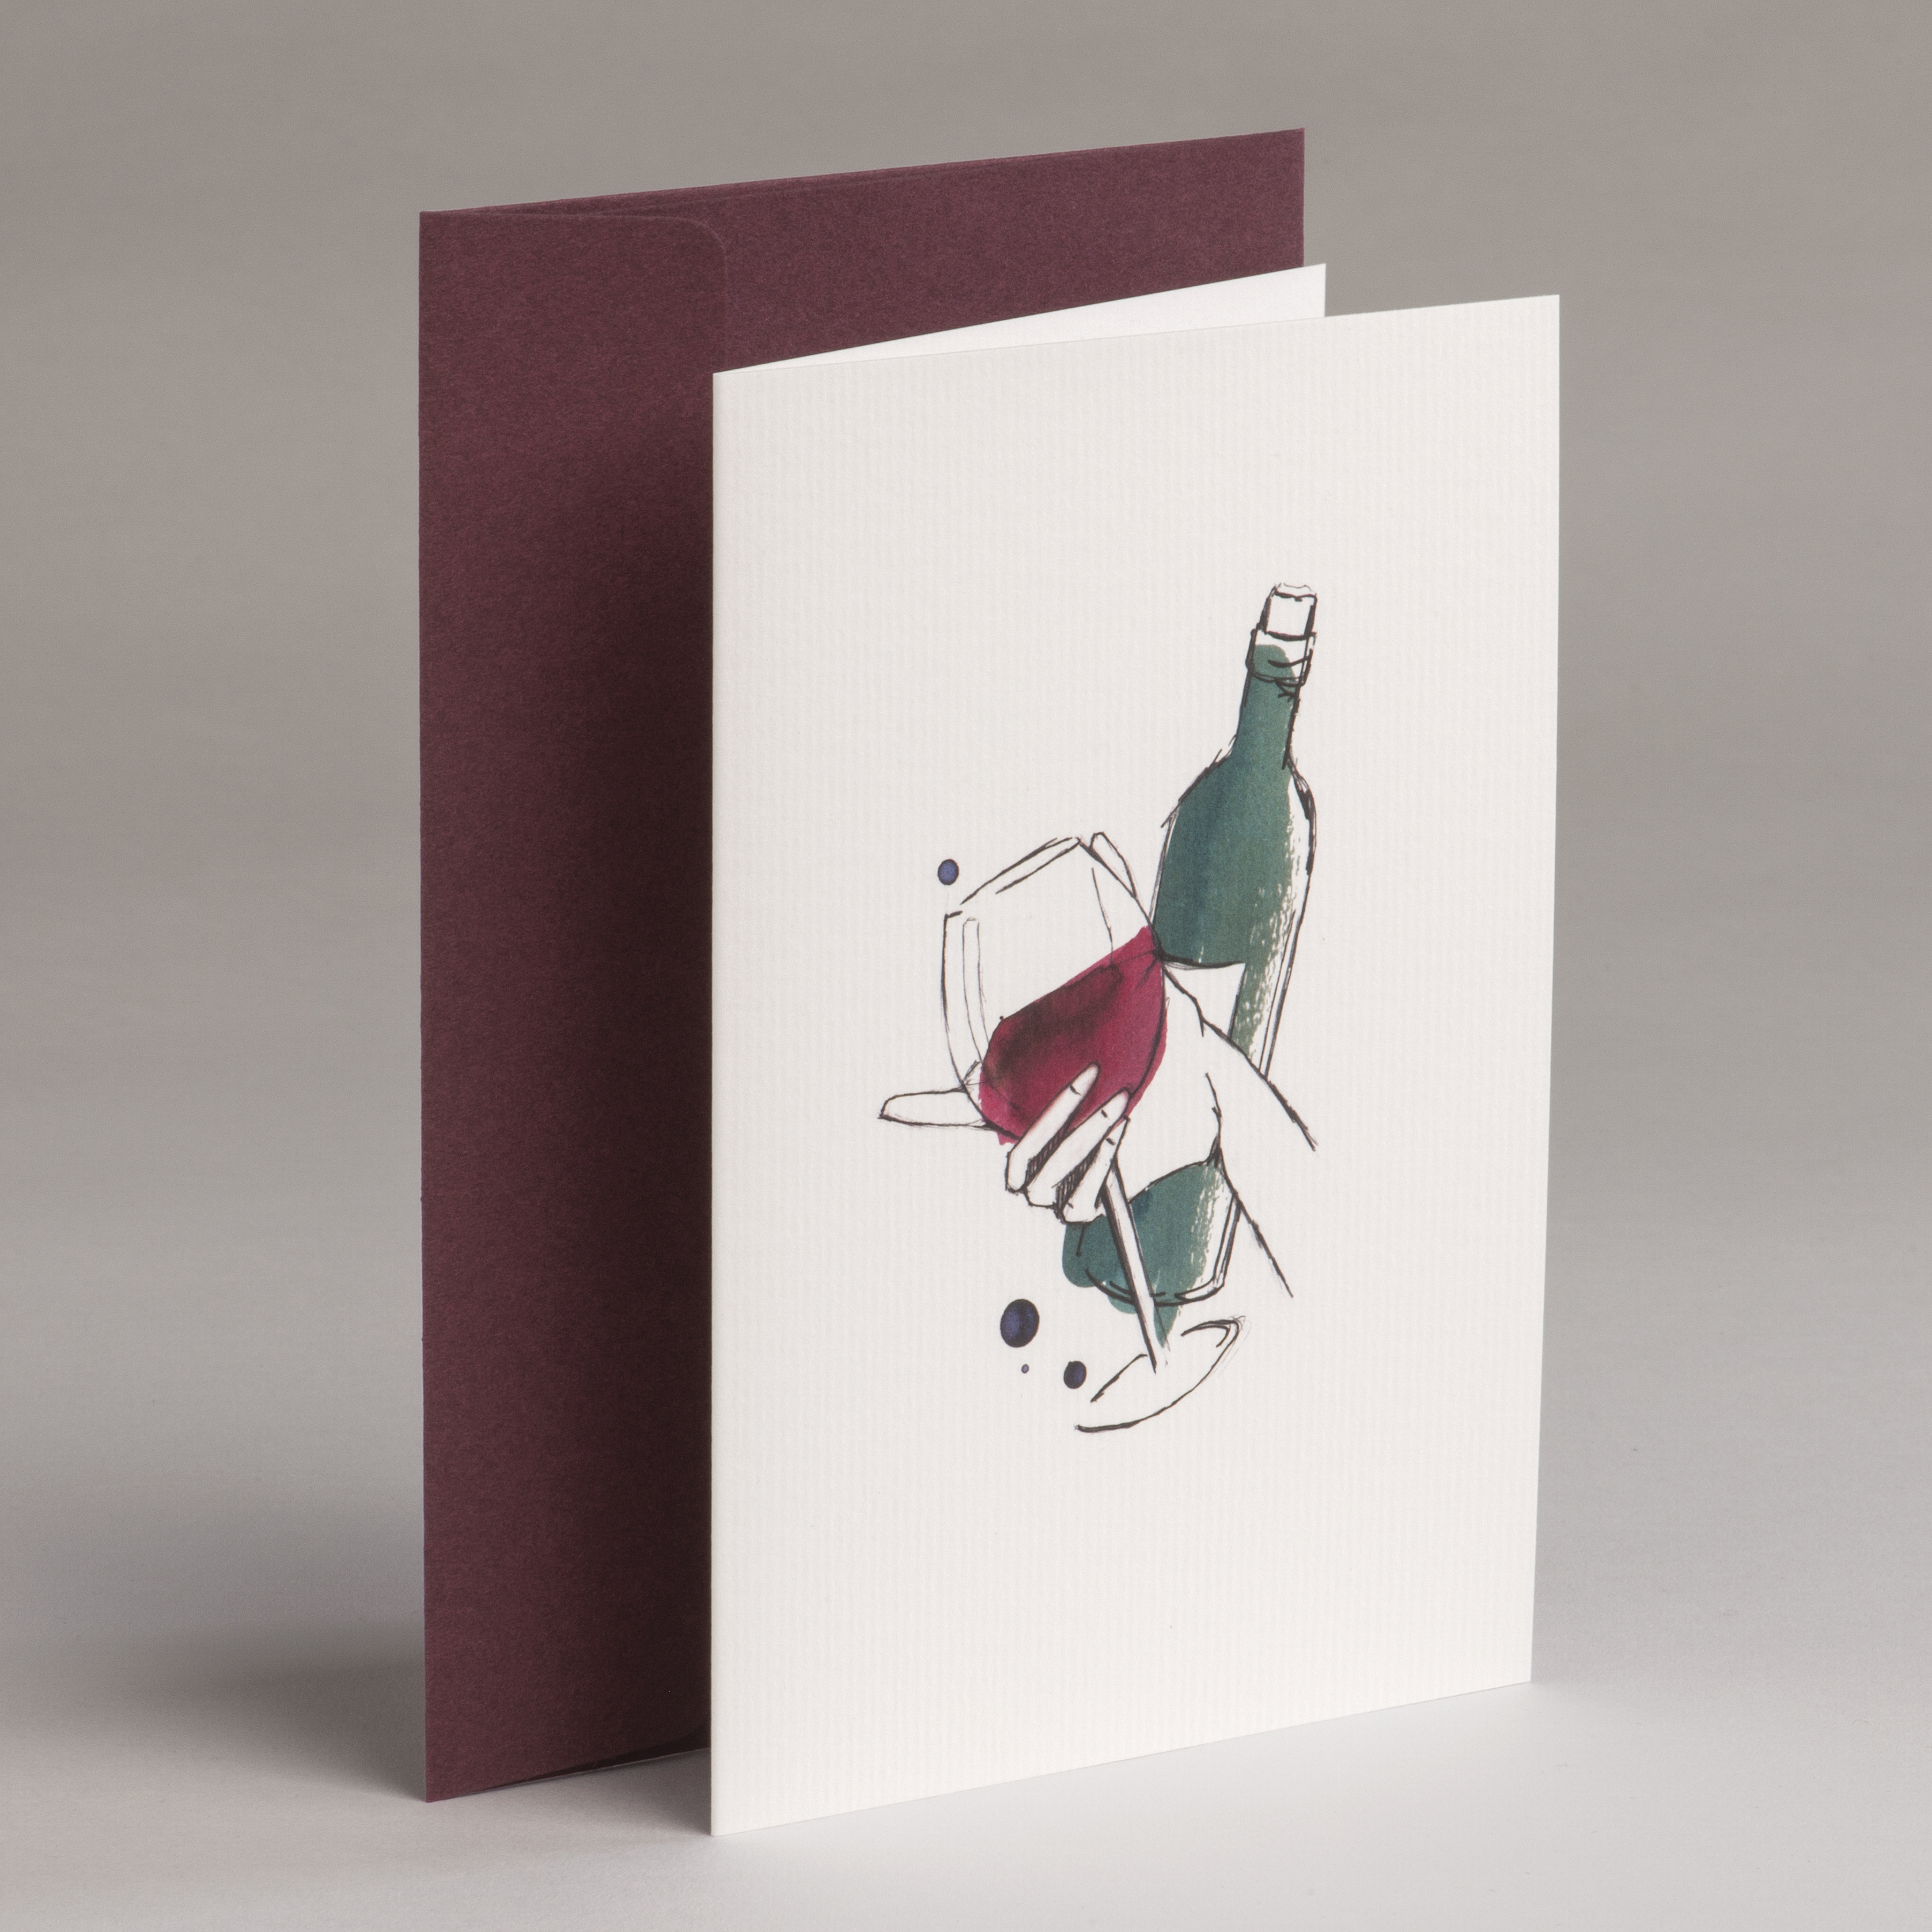 Grußkarte Illustration - Bottle of wine